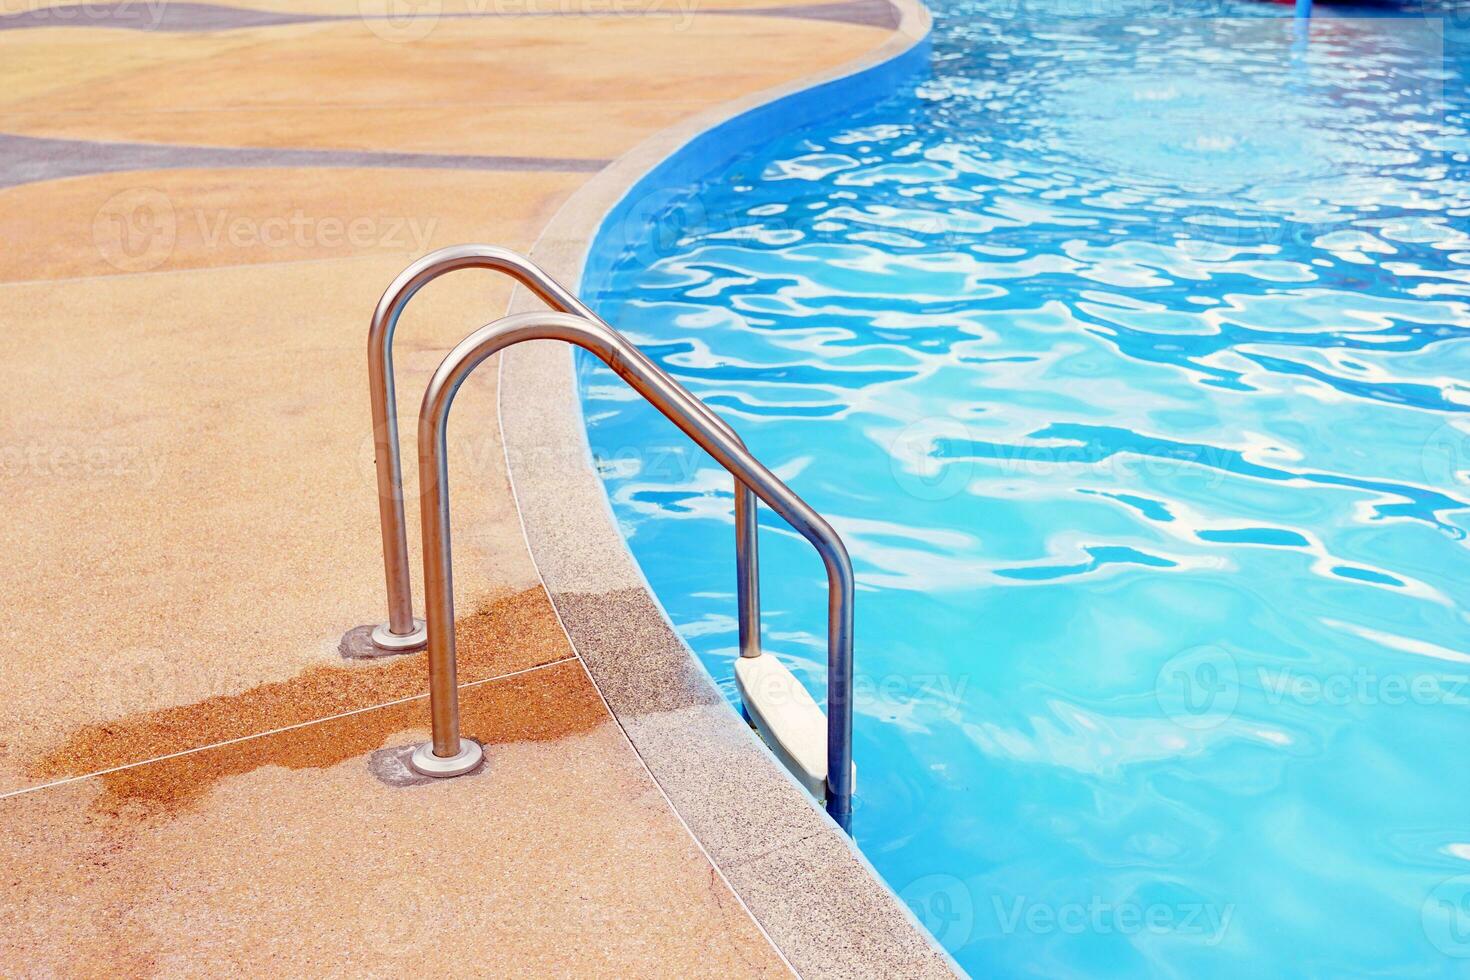 inoxidable acero nadando piscina barandilla es usado para participación arriba y abajo el nadando piscina para seguridad, fortaleza, hecho desde corrosión resistente materiales, no oxidado, no resbaladizo. foto